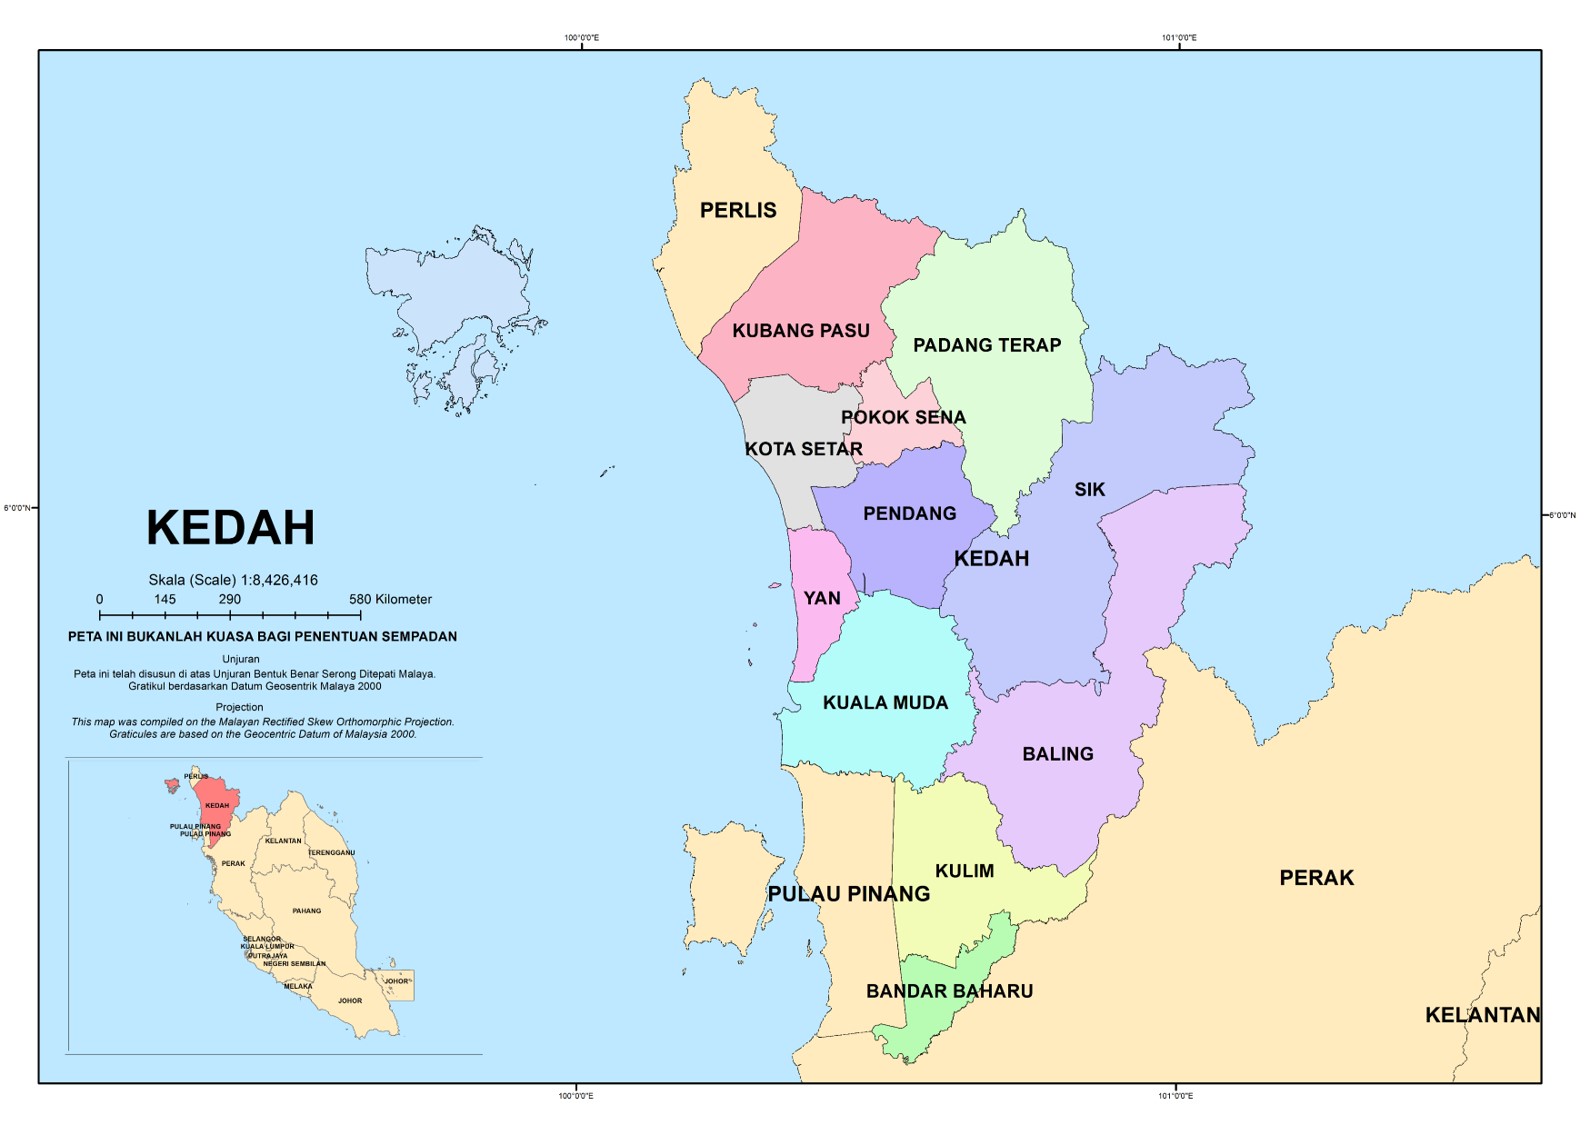  Peta Kedah